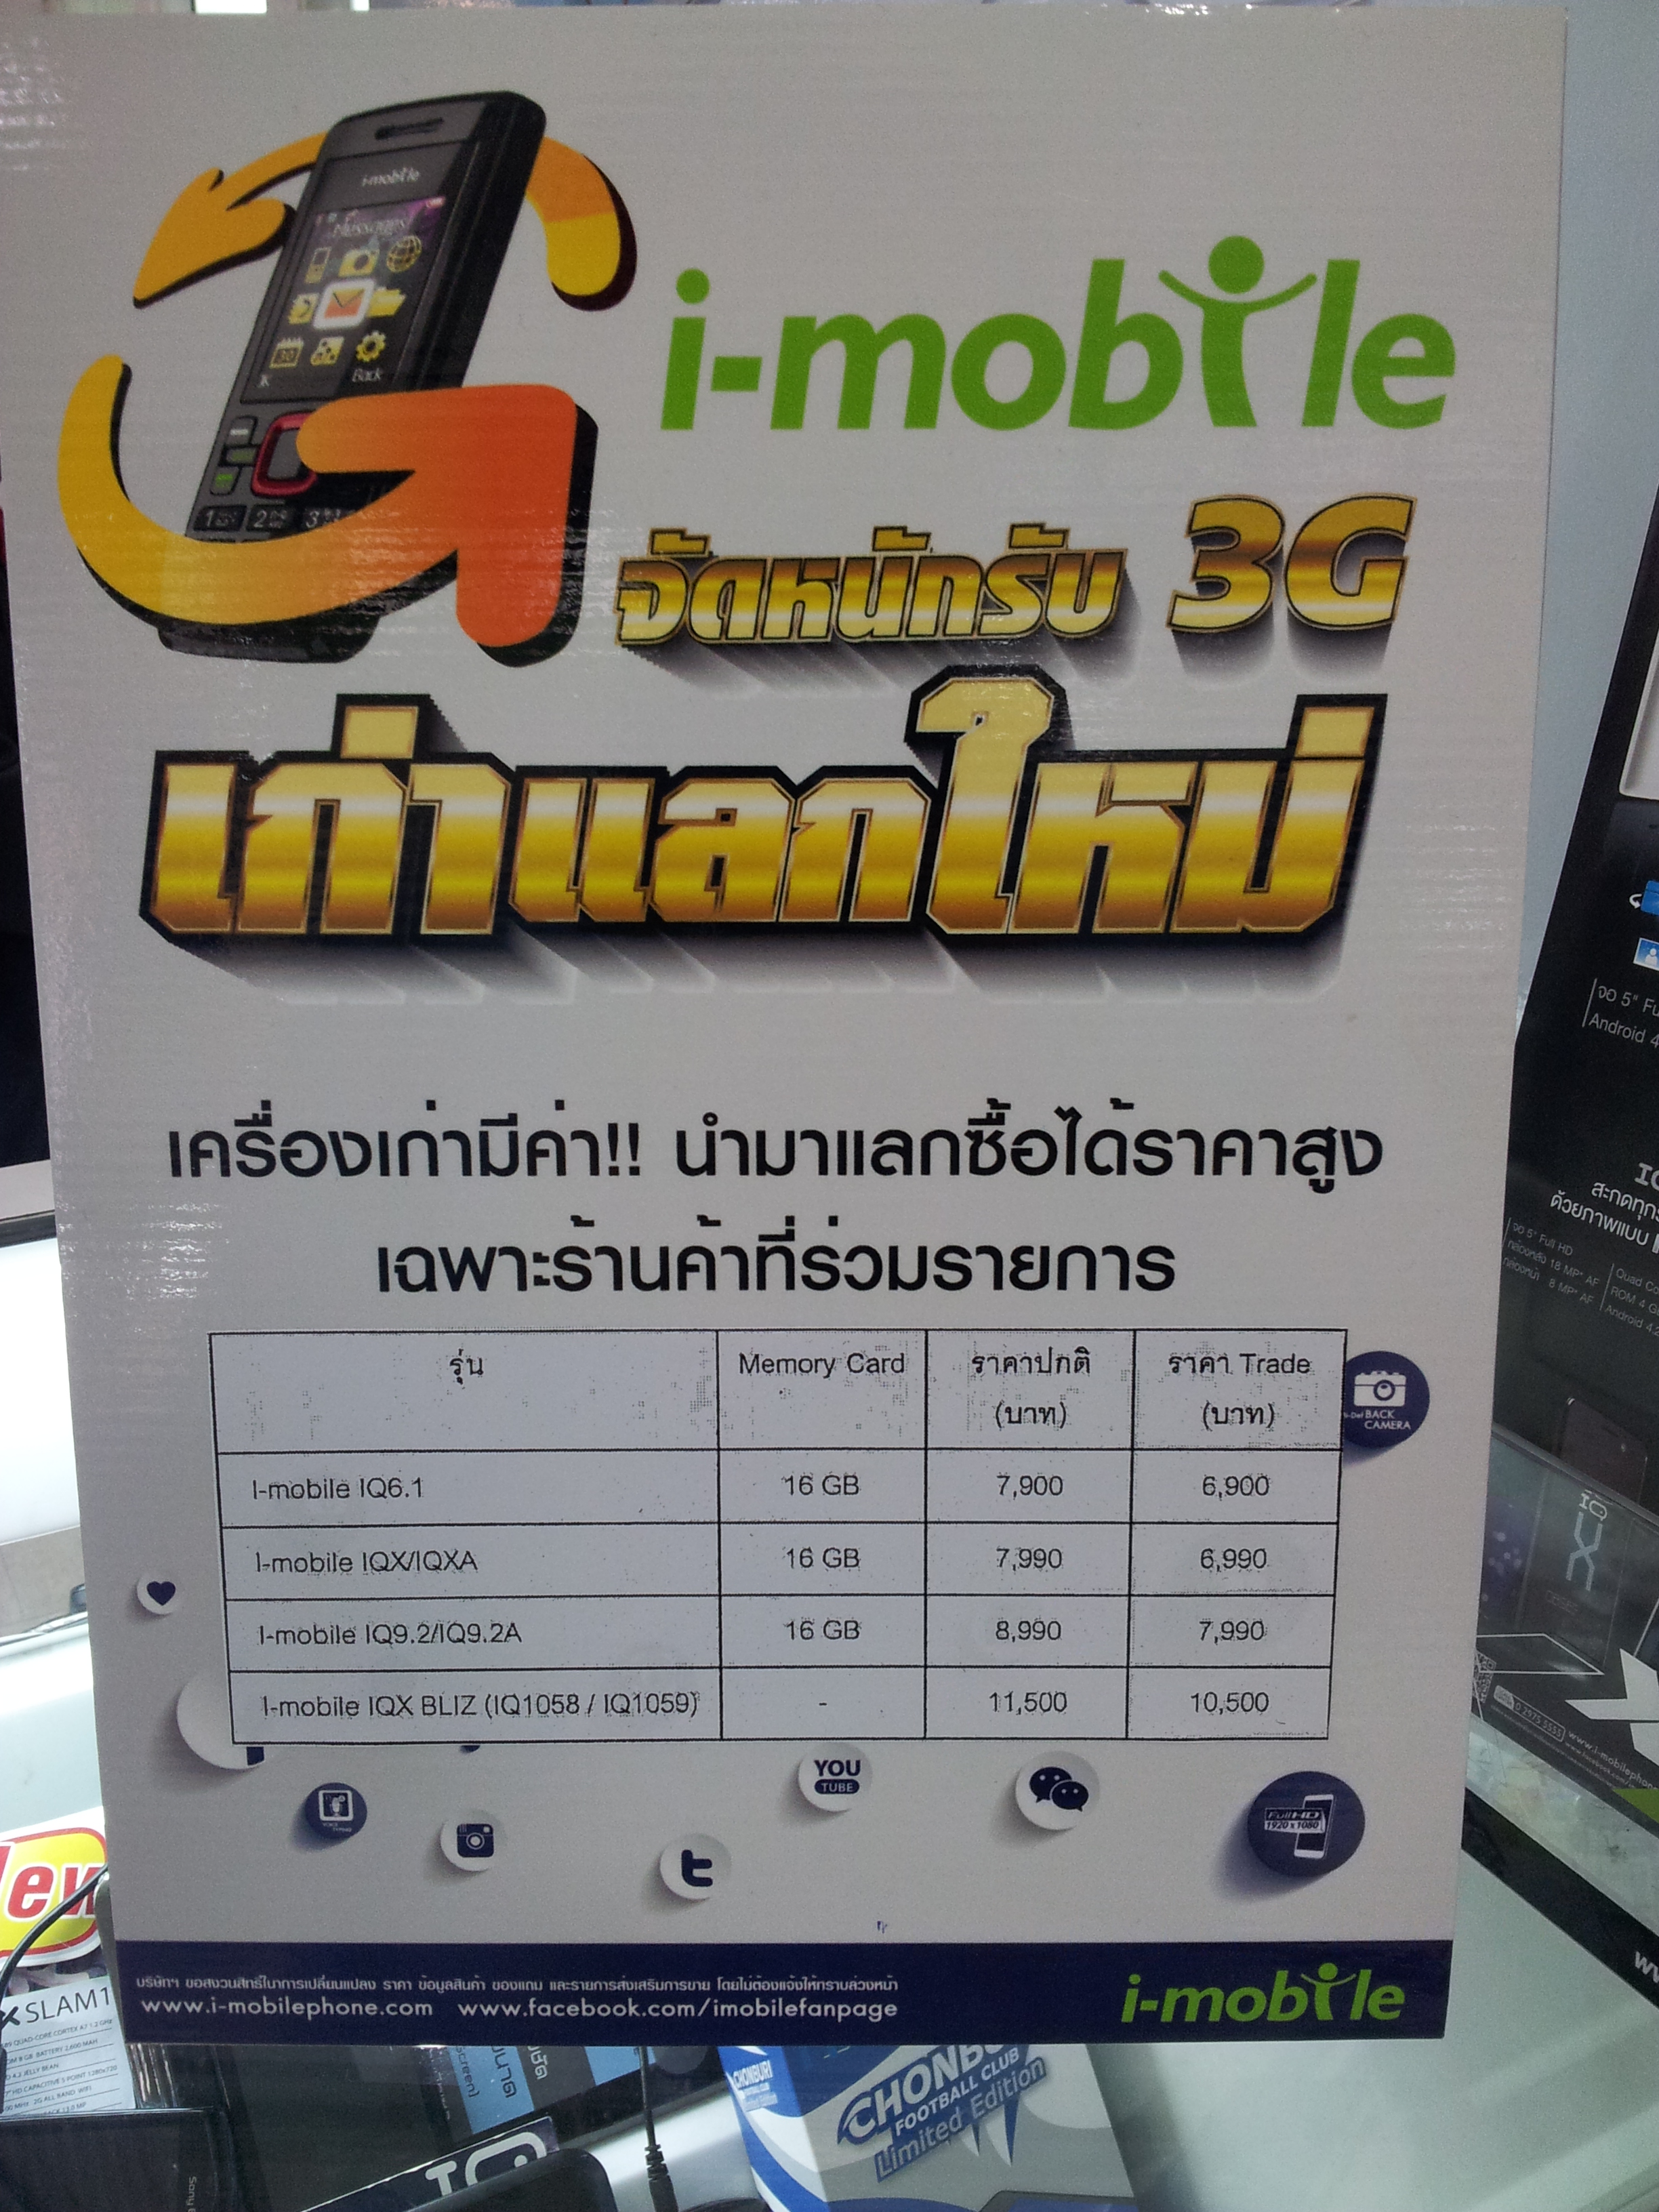 2014 02 03 18.06.09 | i-Mobile | [Admin บุกตลาดมือถือ] อัพเดทความเคลื่อนไหวรุ่นต่างๆที่น่าสนใจที่ MBK